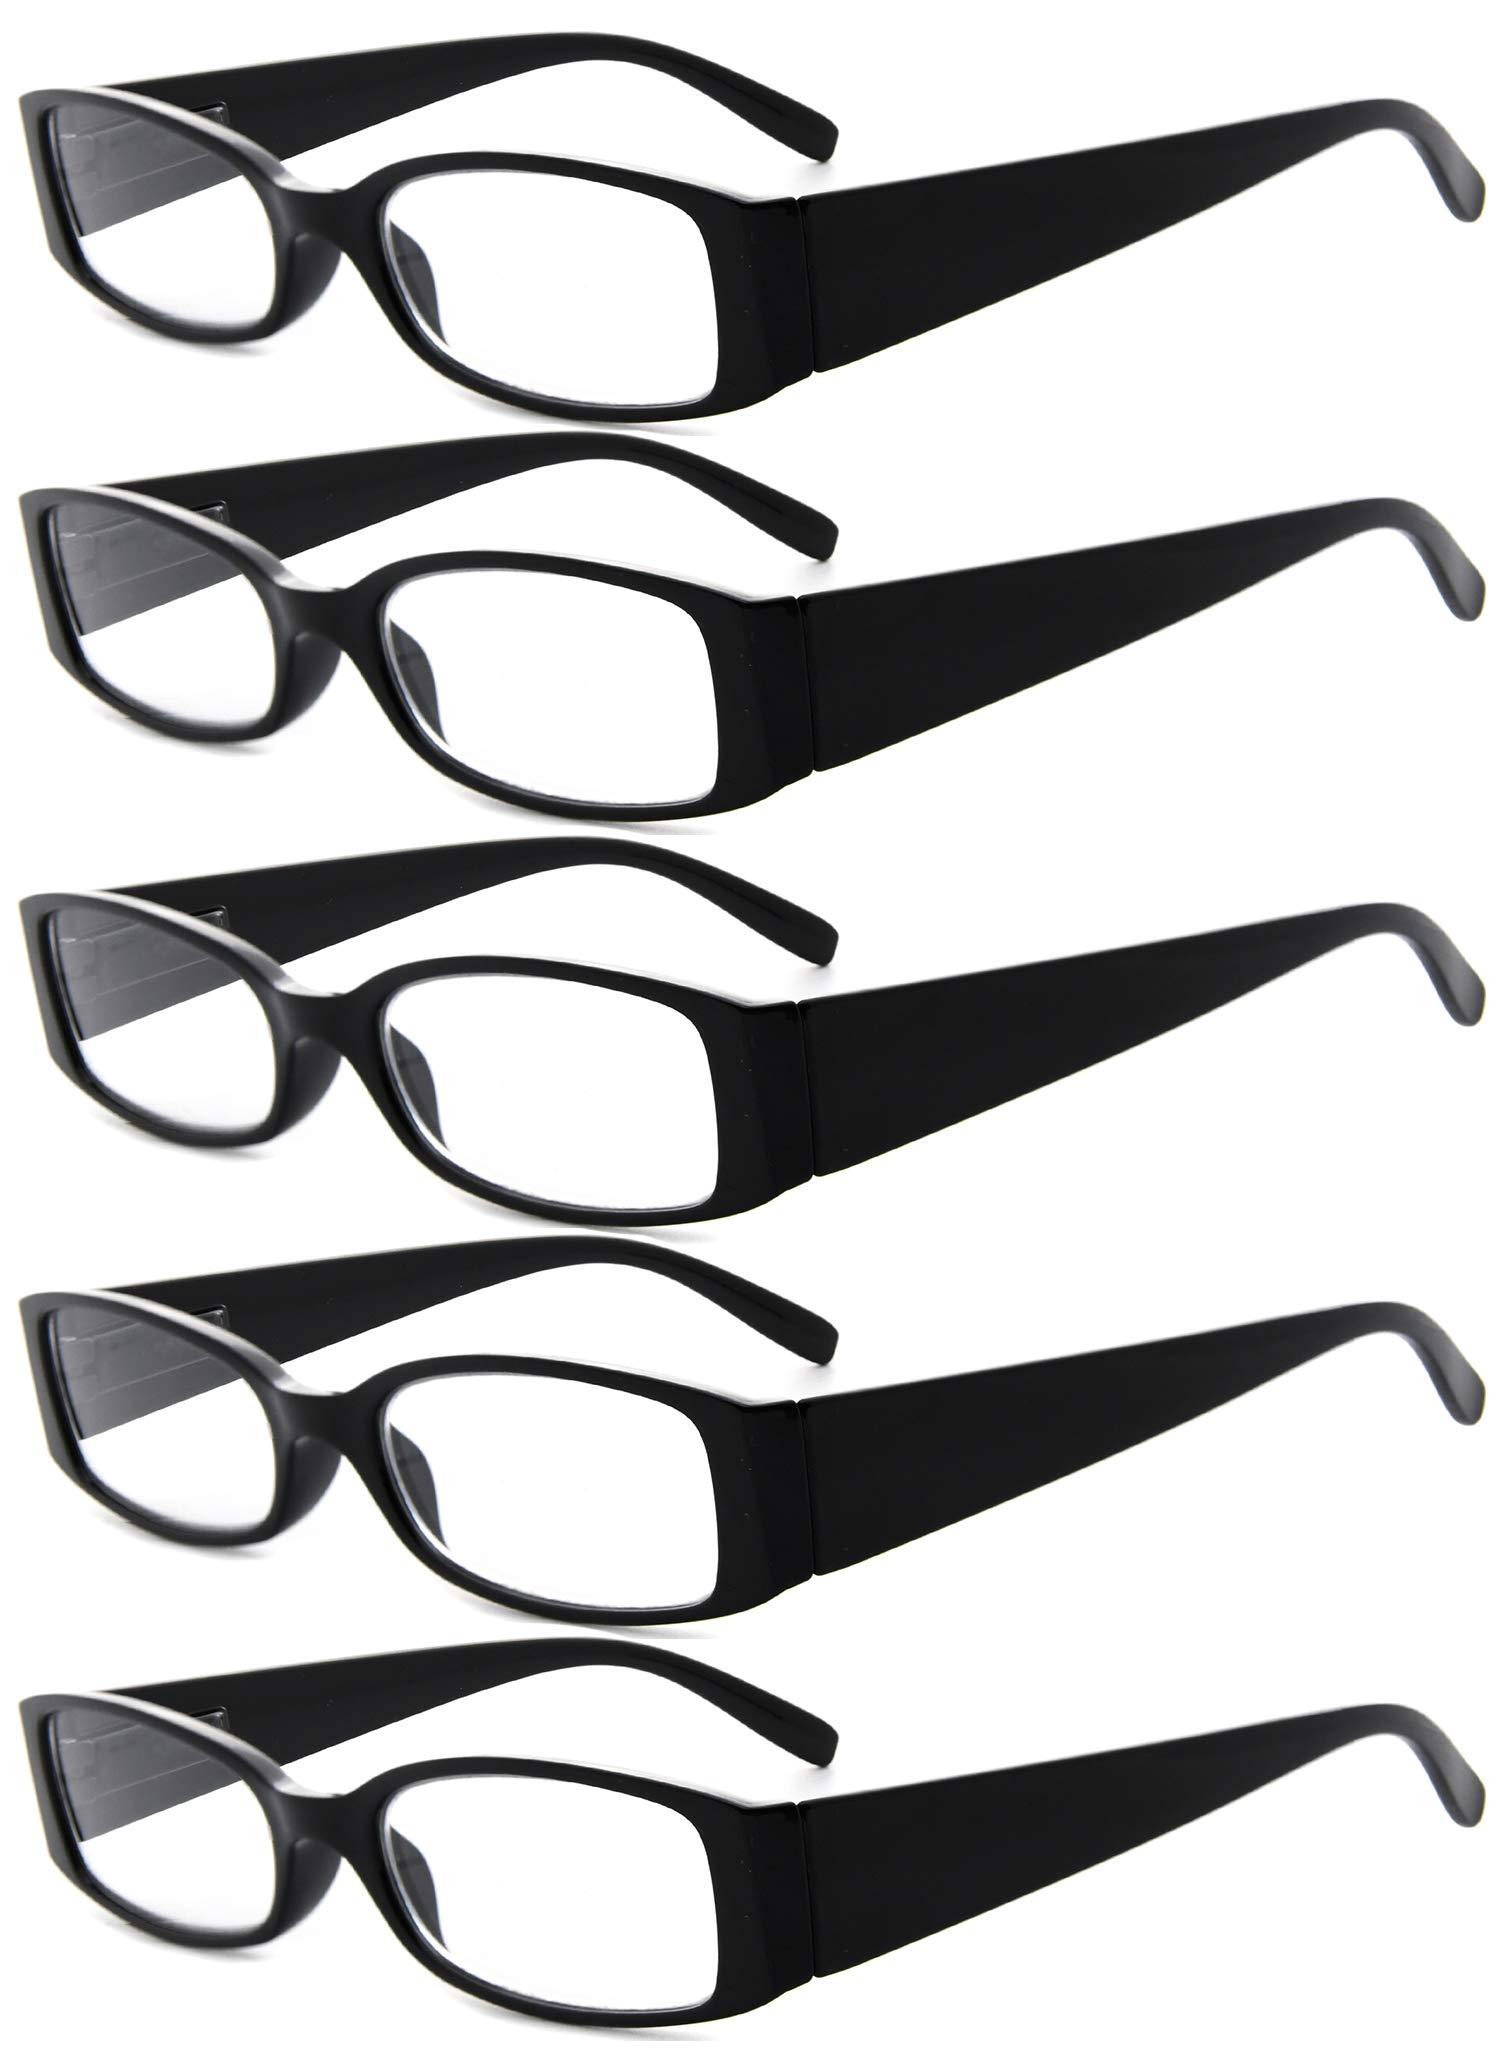 Eyekepper 5 Pairs Reading Glasses for Women Reading +3.00 Black Frame Reading Eyeglasses 0